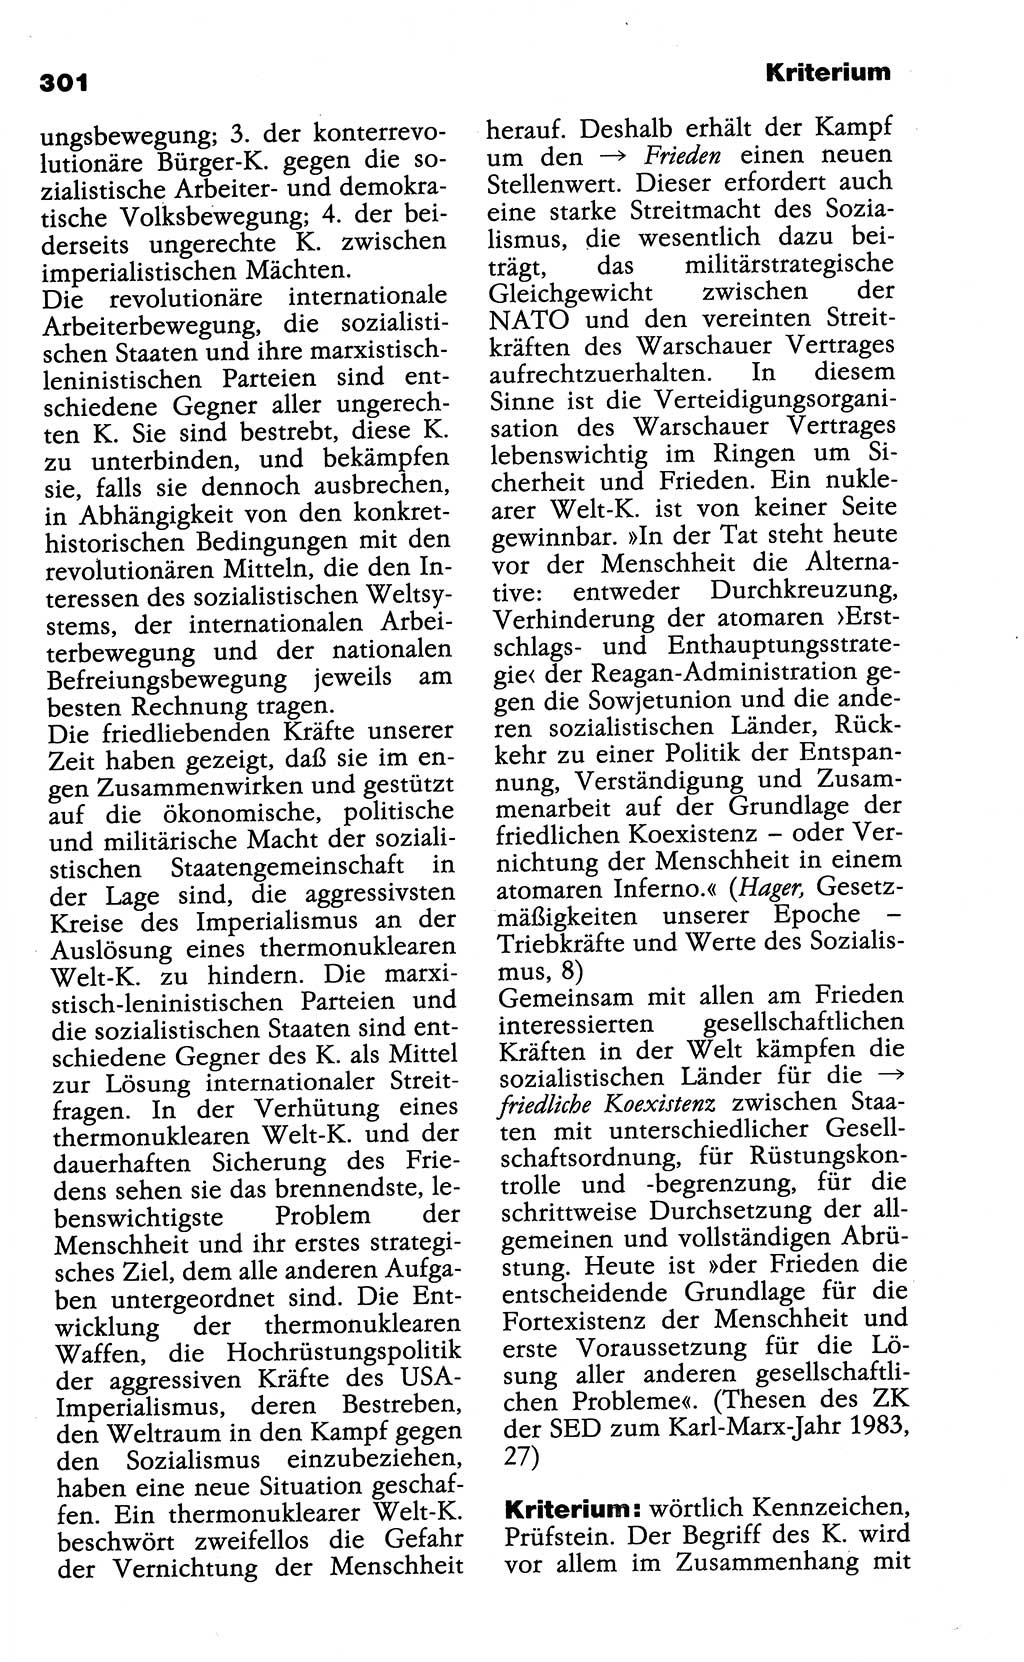 Wörterbuch der marxistisch-leninistischen Philosophie [Deutsche Demokratische Republik (DDR)] 1985, Seite 301 (Wb. ML Phil. DDR 1985, S. 301)